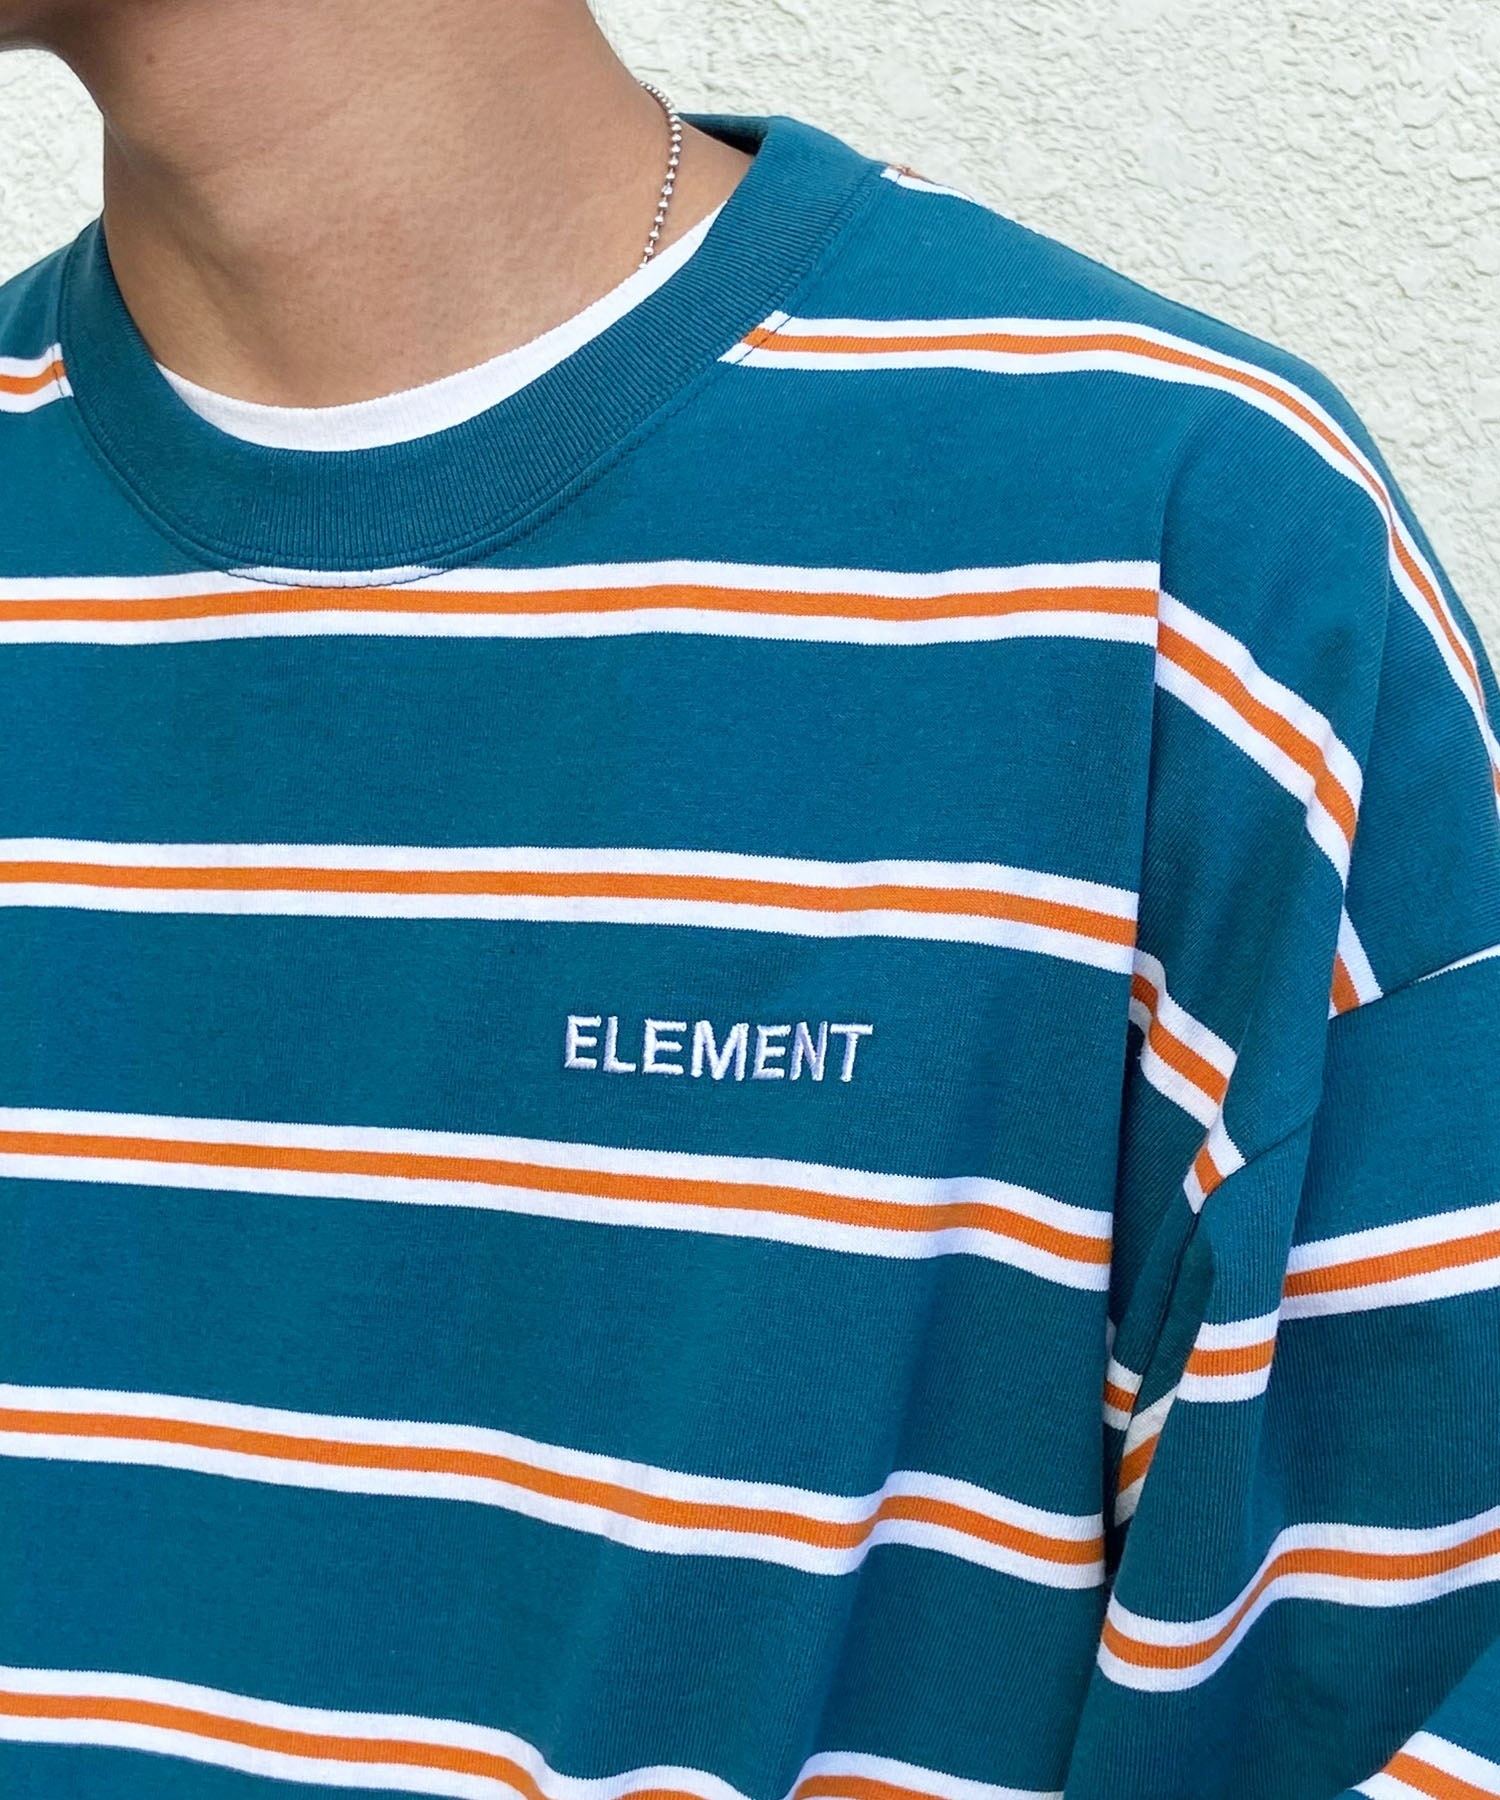 ELEMENT エレメント メンズ 長袖 Tシャツ ロンT ボーダー ルーズシルエット BE021-053(FBK-M)